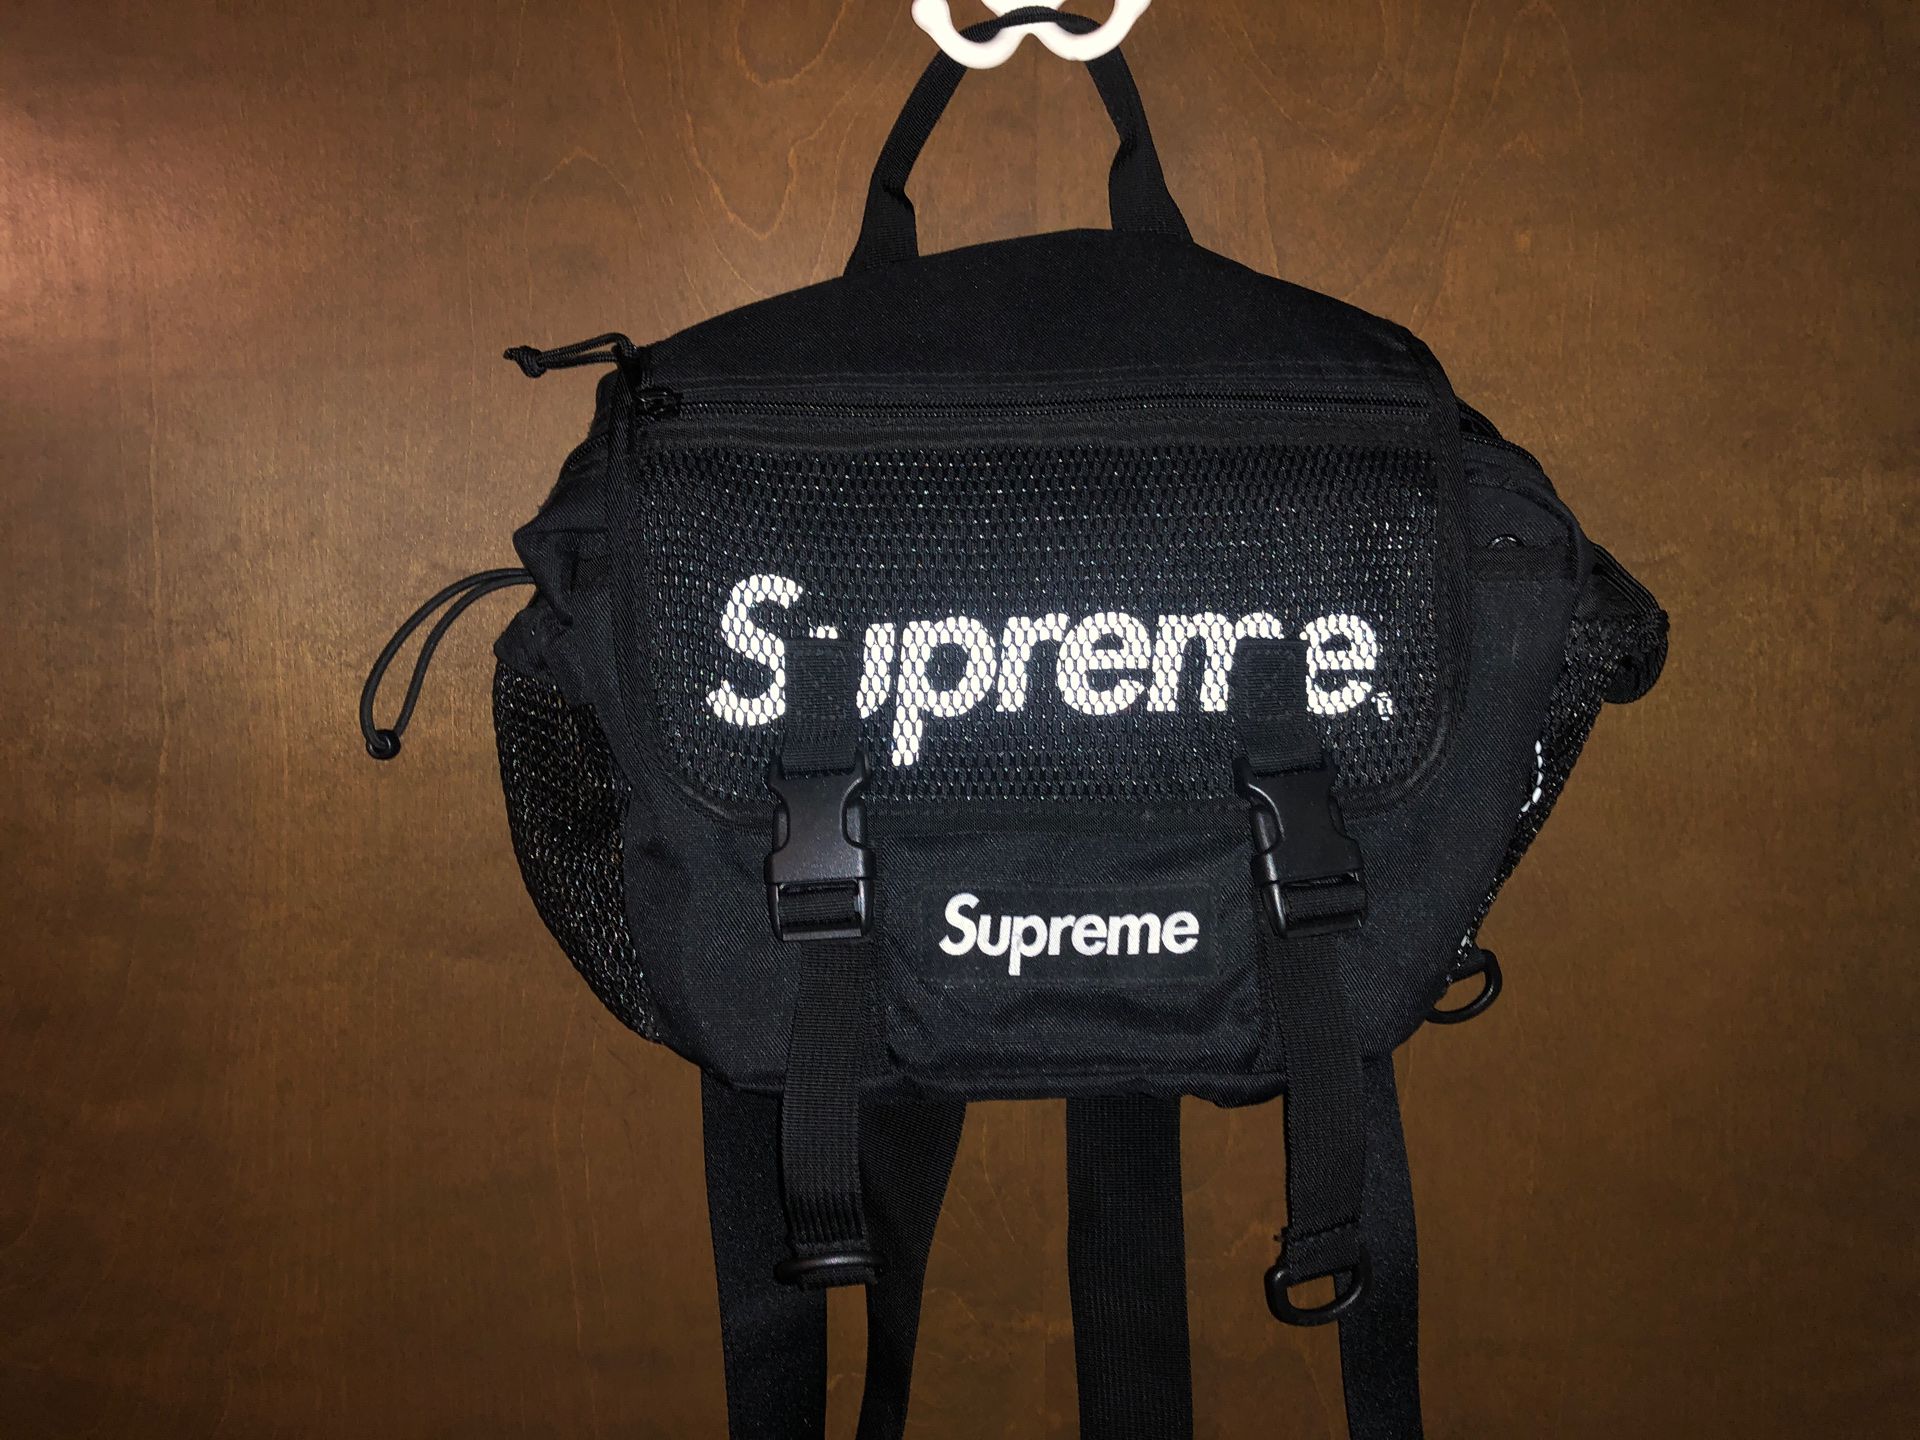 supreme fanny pack / side bag